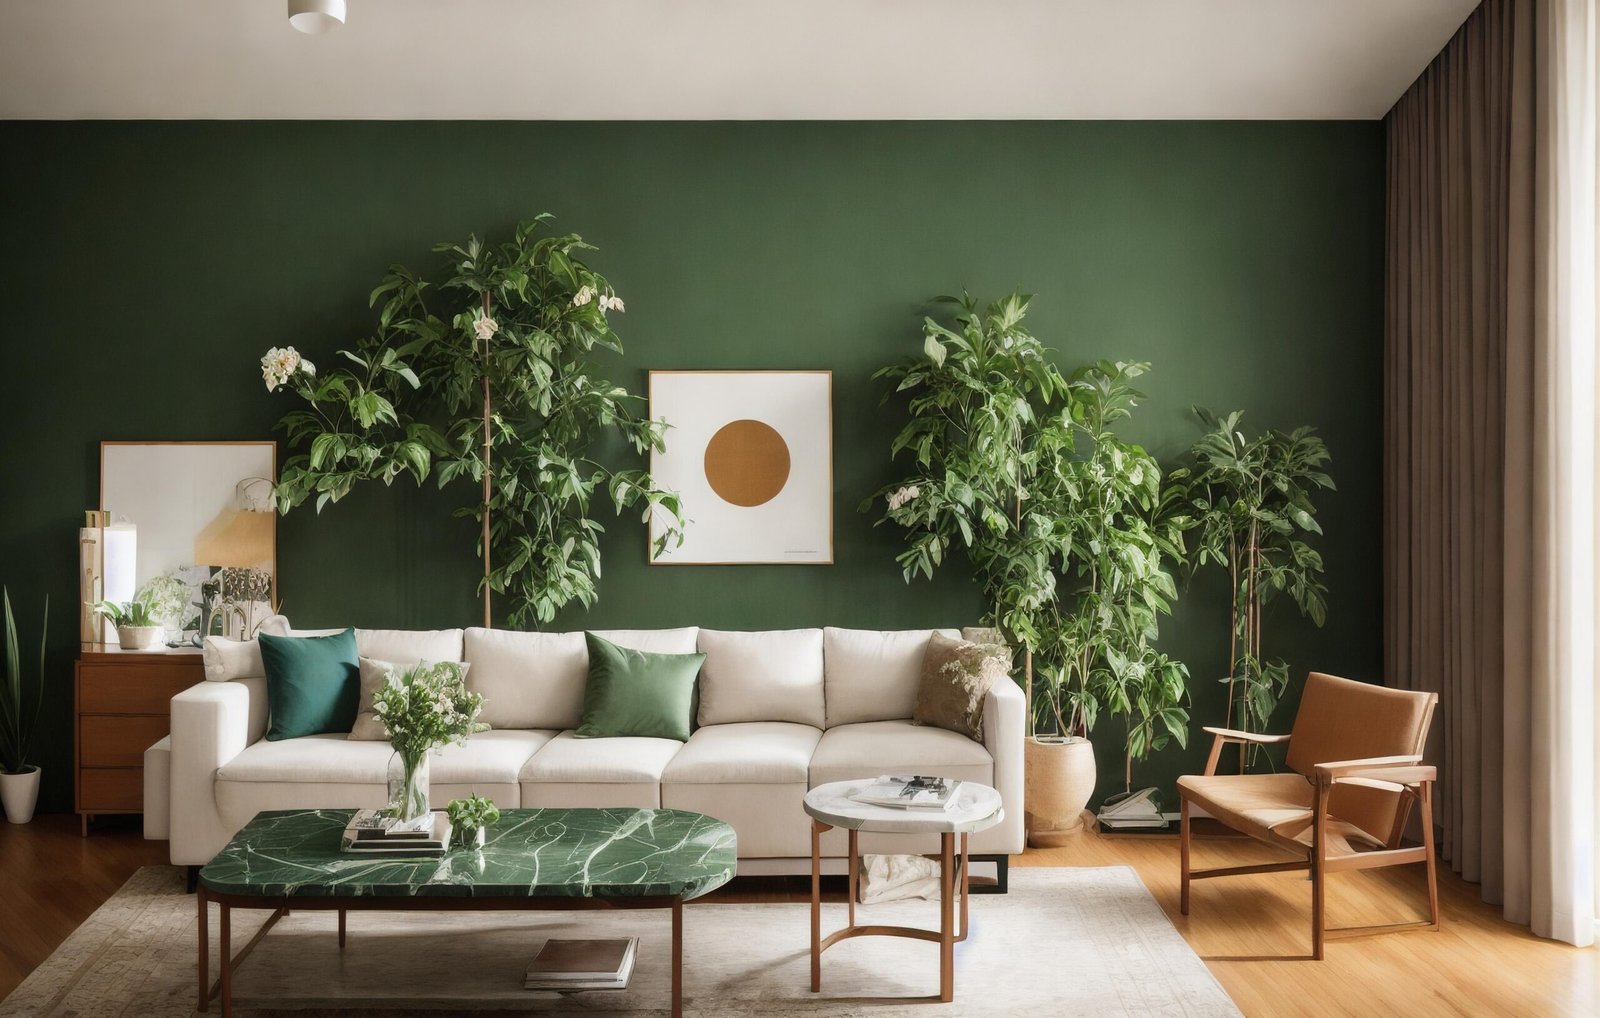 Intérieur de salon moderne avec des touches de vert, incluant un canapé crème, des plantes, une table en marbre et des éléments en bois, sous une lumière naturelle.